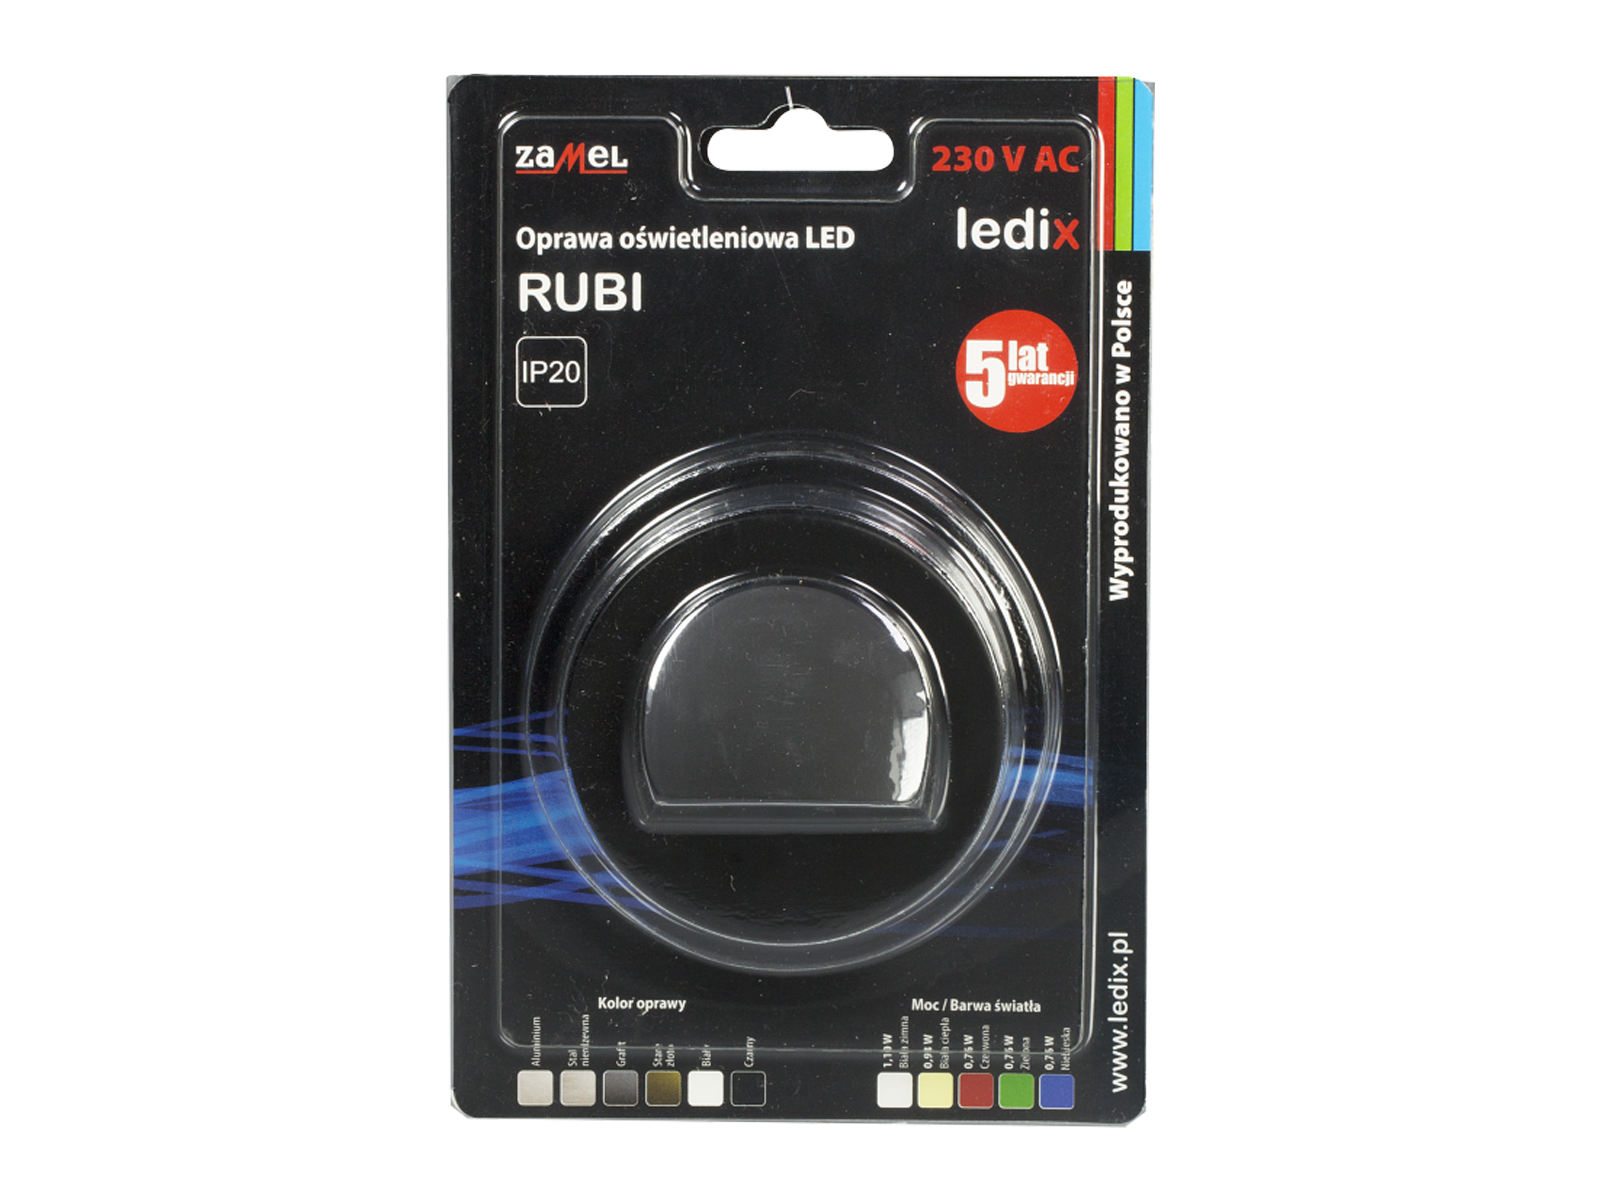 Svítidlo LED pod omítku LEDIX RUBI 230V AC, černé, neutrální bílá, IP20